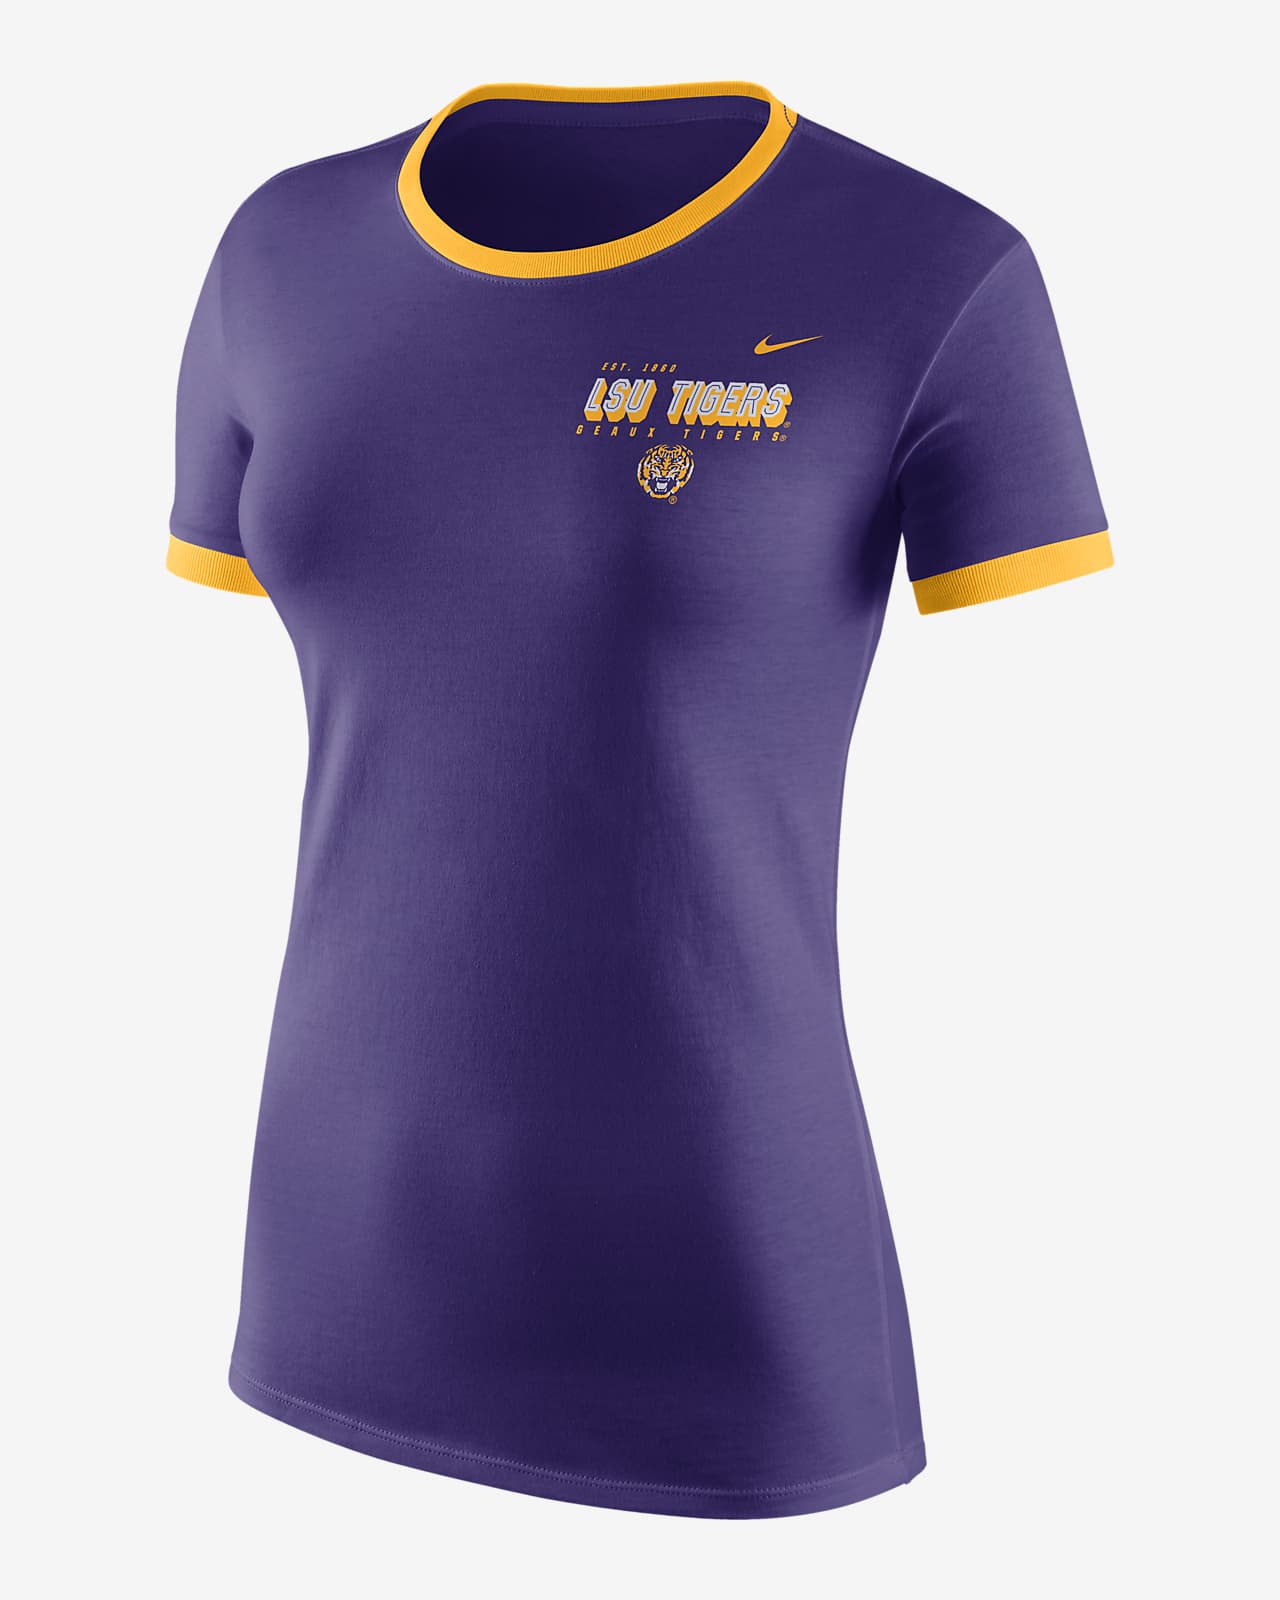 Nike College (LSU) Women's Logo T-Shirt 